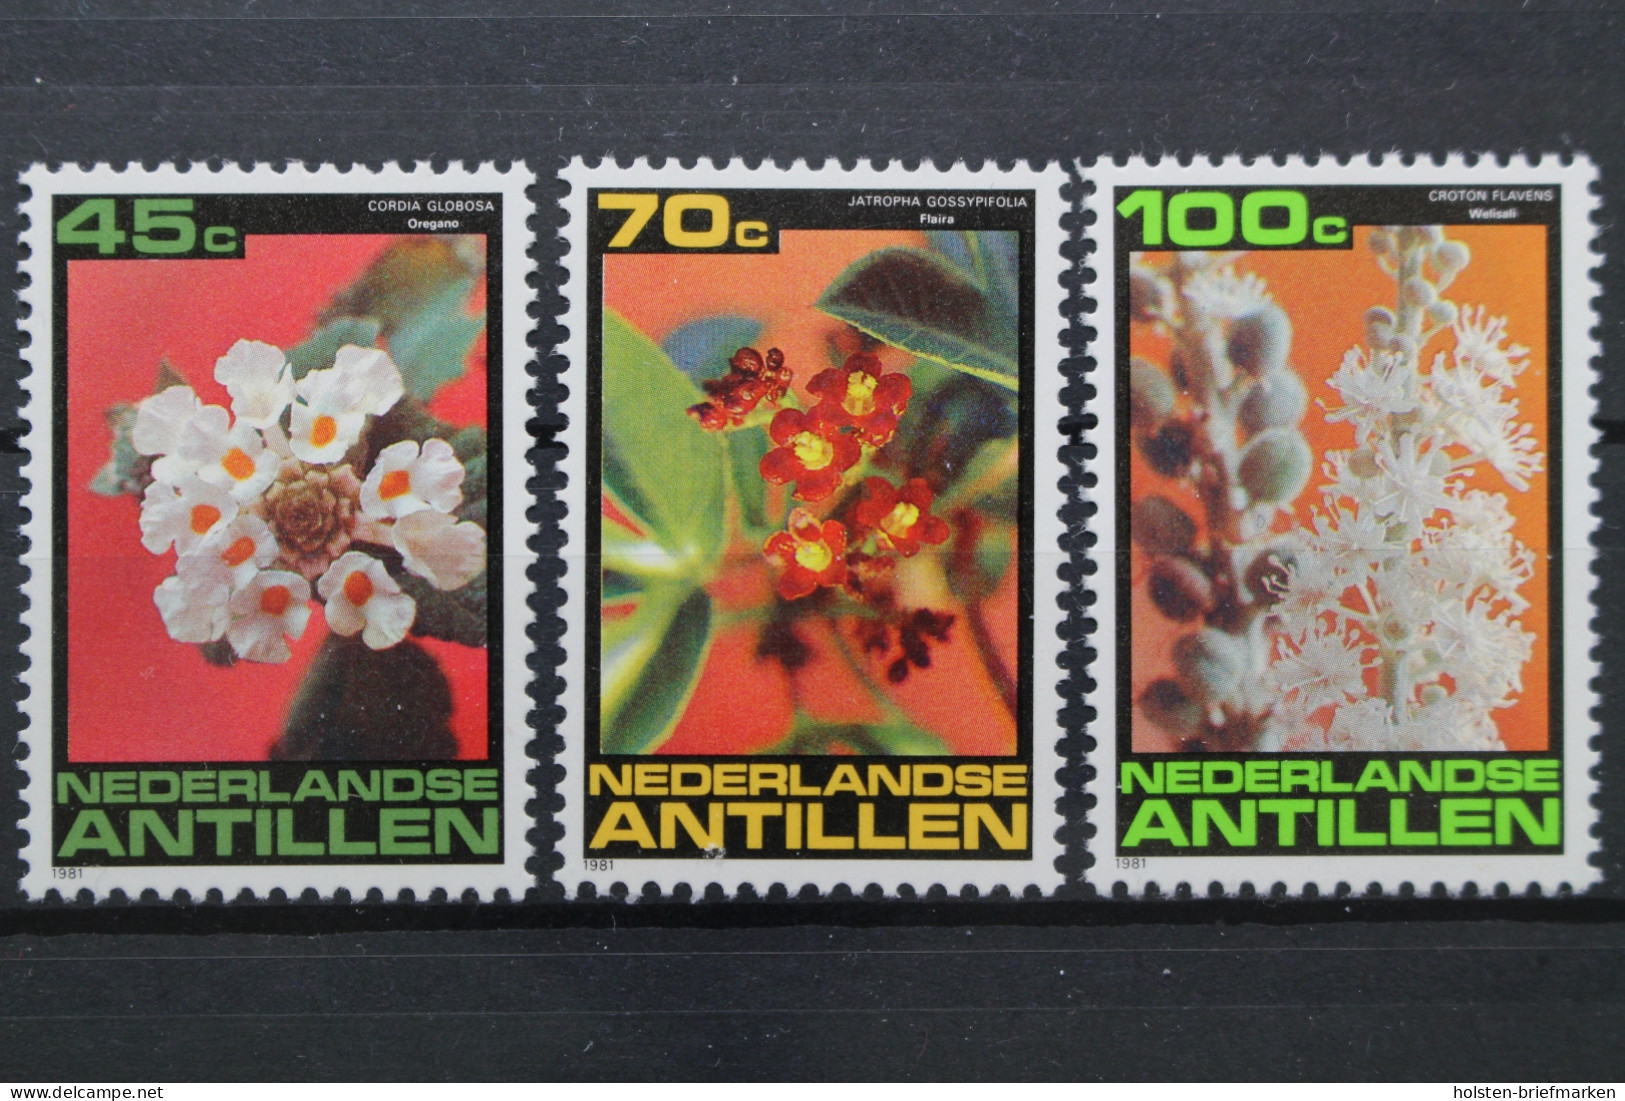 Niederländische Antillen, MiNr. 457-459, Postfrisch - Sonstige - Amerika